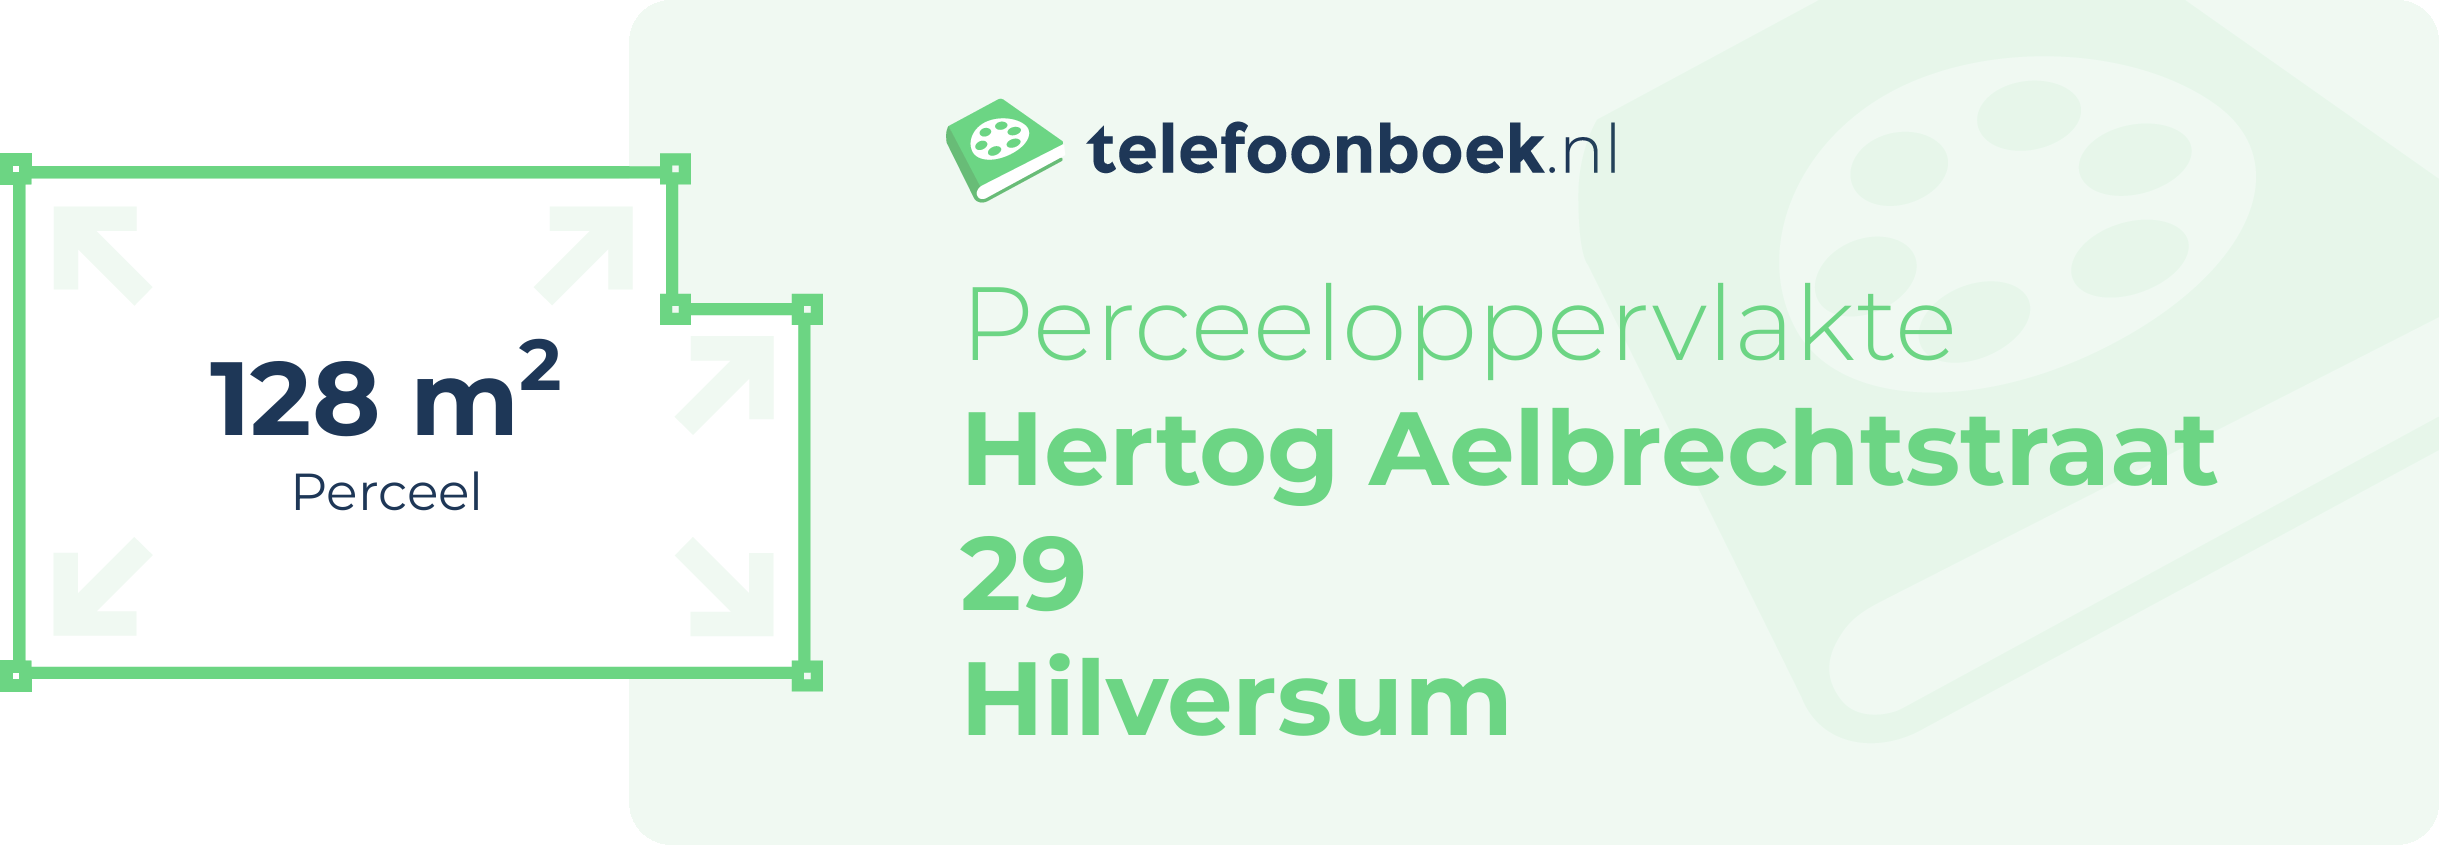 Perceeloppervlakte Hertog Aelbrechtstraat 29 Hilversum